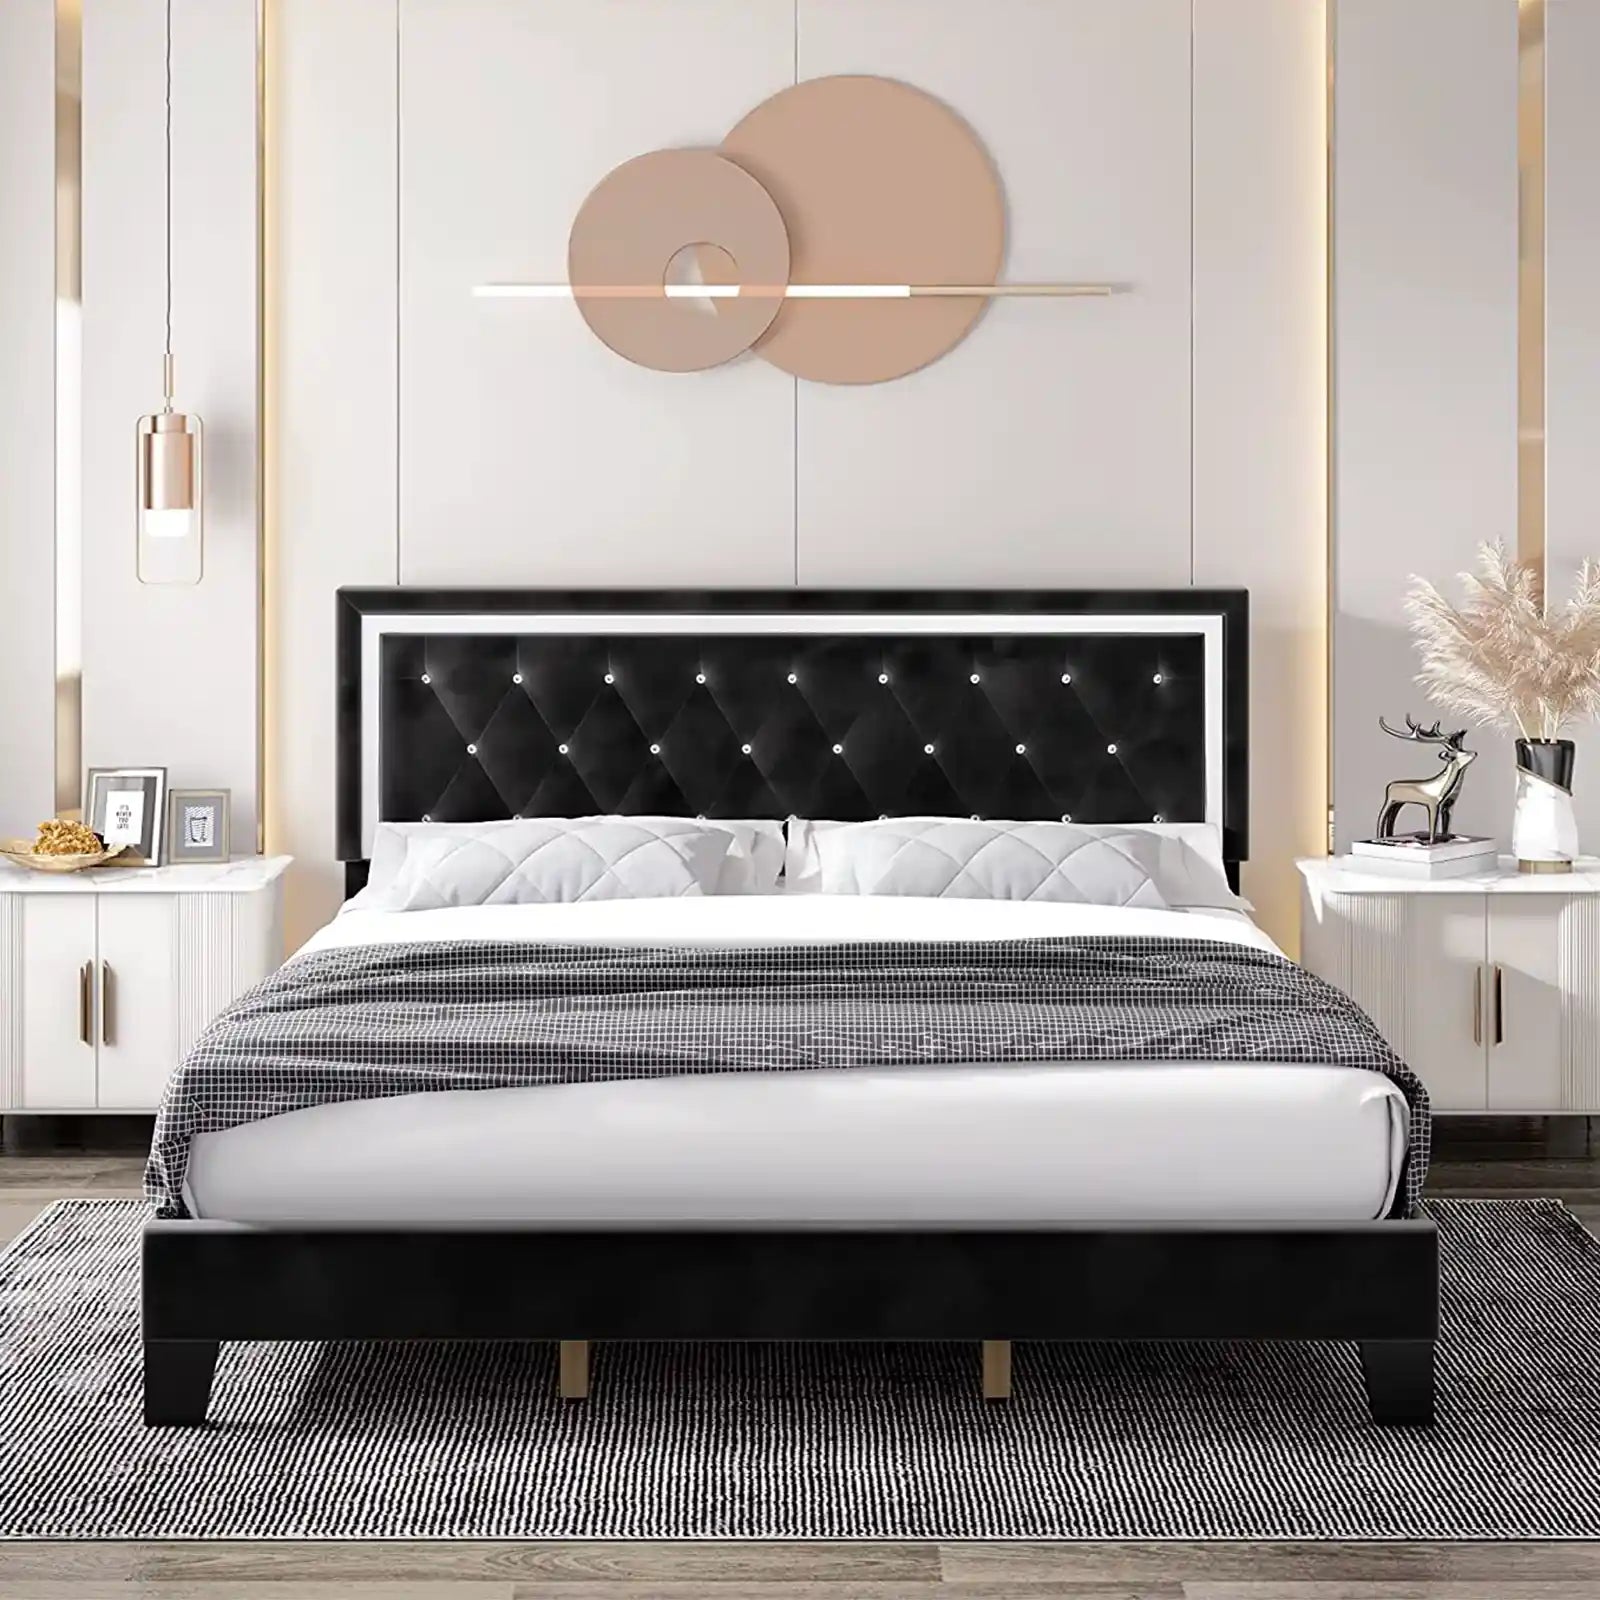 Marco de cama con plataforma tapizada con capitoné de diamantes y cabecera ajustable moderna